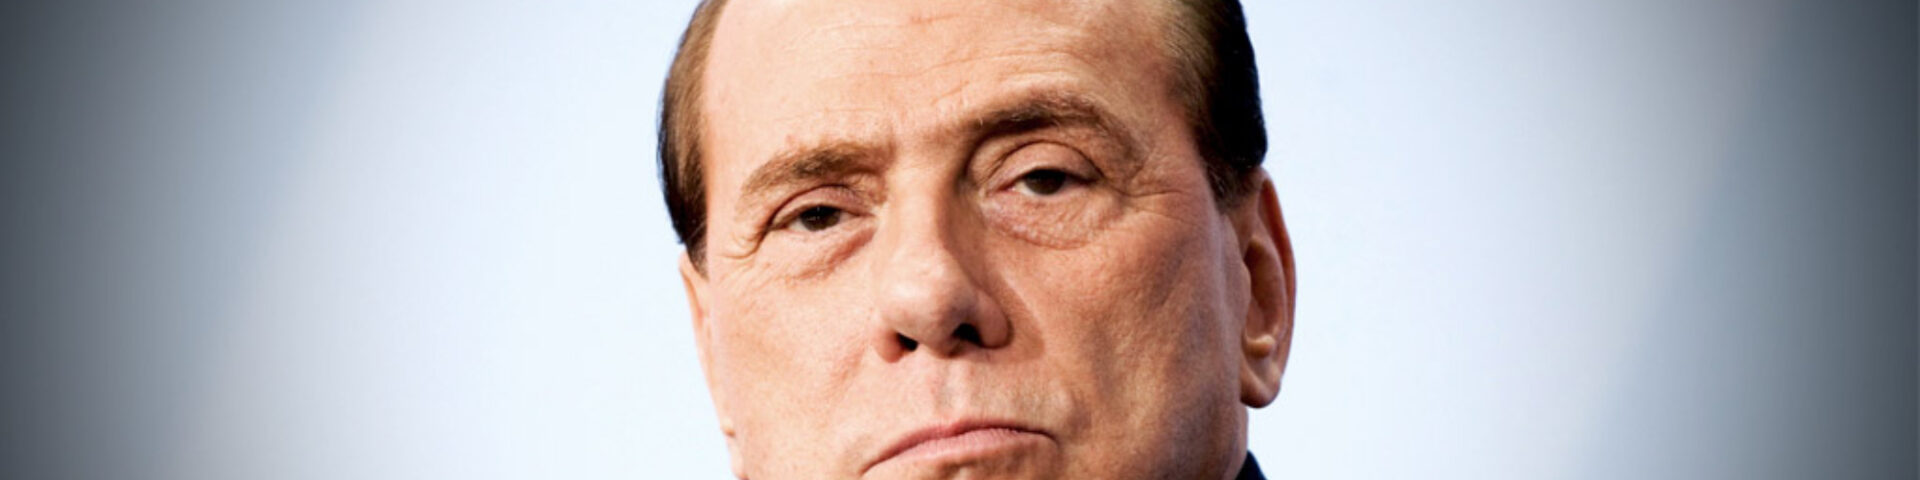 È morto Silvio Berlusconi: la notizia ufficiale